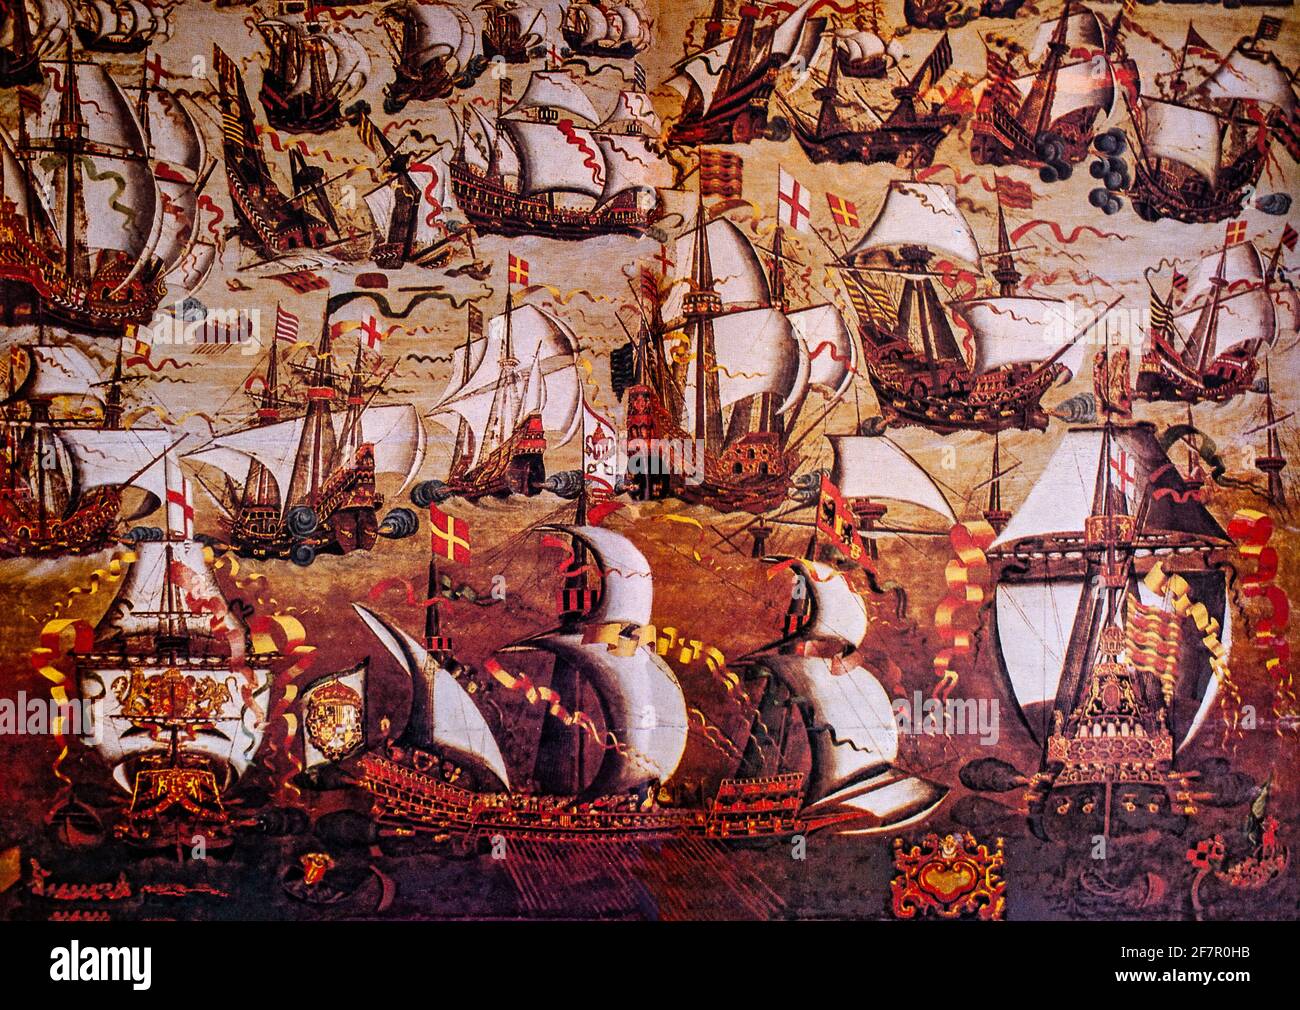 Eine Illustration der spanischen Armada, die nach jahrzehntelanger Feindseligkeit zwischen dem spanischen katholischen König Philipp II. Und der protestierenden Königin Elisabeth I. im Sommer 1588 nach England aufgebrochen ist, vervollständigt von einem unbekannten Zeichner. Das Gemälde wirkt weniger wie ein Gemälde als als ein formaler Entwurf in einem Manierstil, aber kein anderes zeitgenössisches Bild der Armada vermittelt ein vergleichbares Gefühl für die Dramatik und Farbe der Konfrontation zwischen den beiden Flotten, die höchstwahrscheinlich die Aktion von Gravelines sind, Der einzige Punkt, an dem eine große Anzahl von Schiffen beider Seiten in einen anhaltenden Konflikt verwickelt waren. Stockfoto